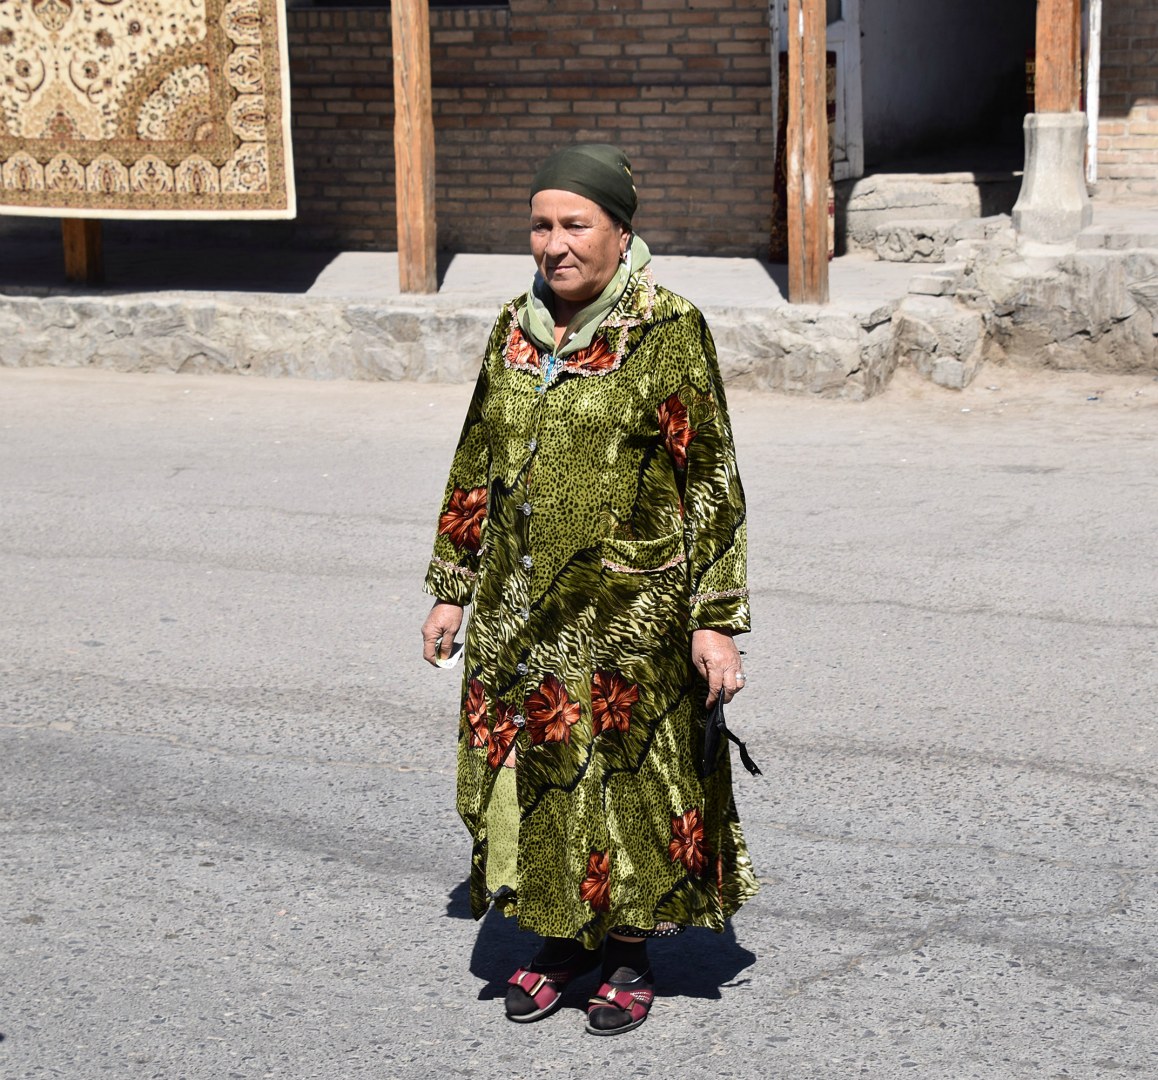 Local woman, Bukhara